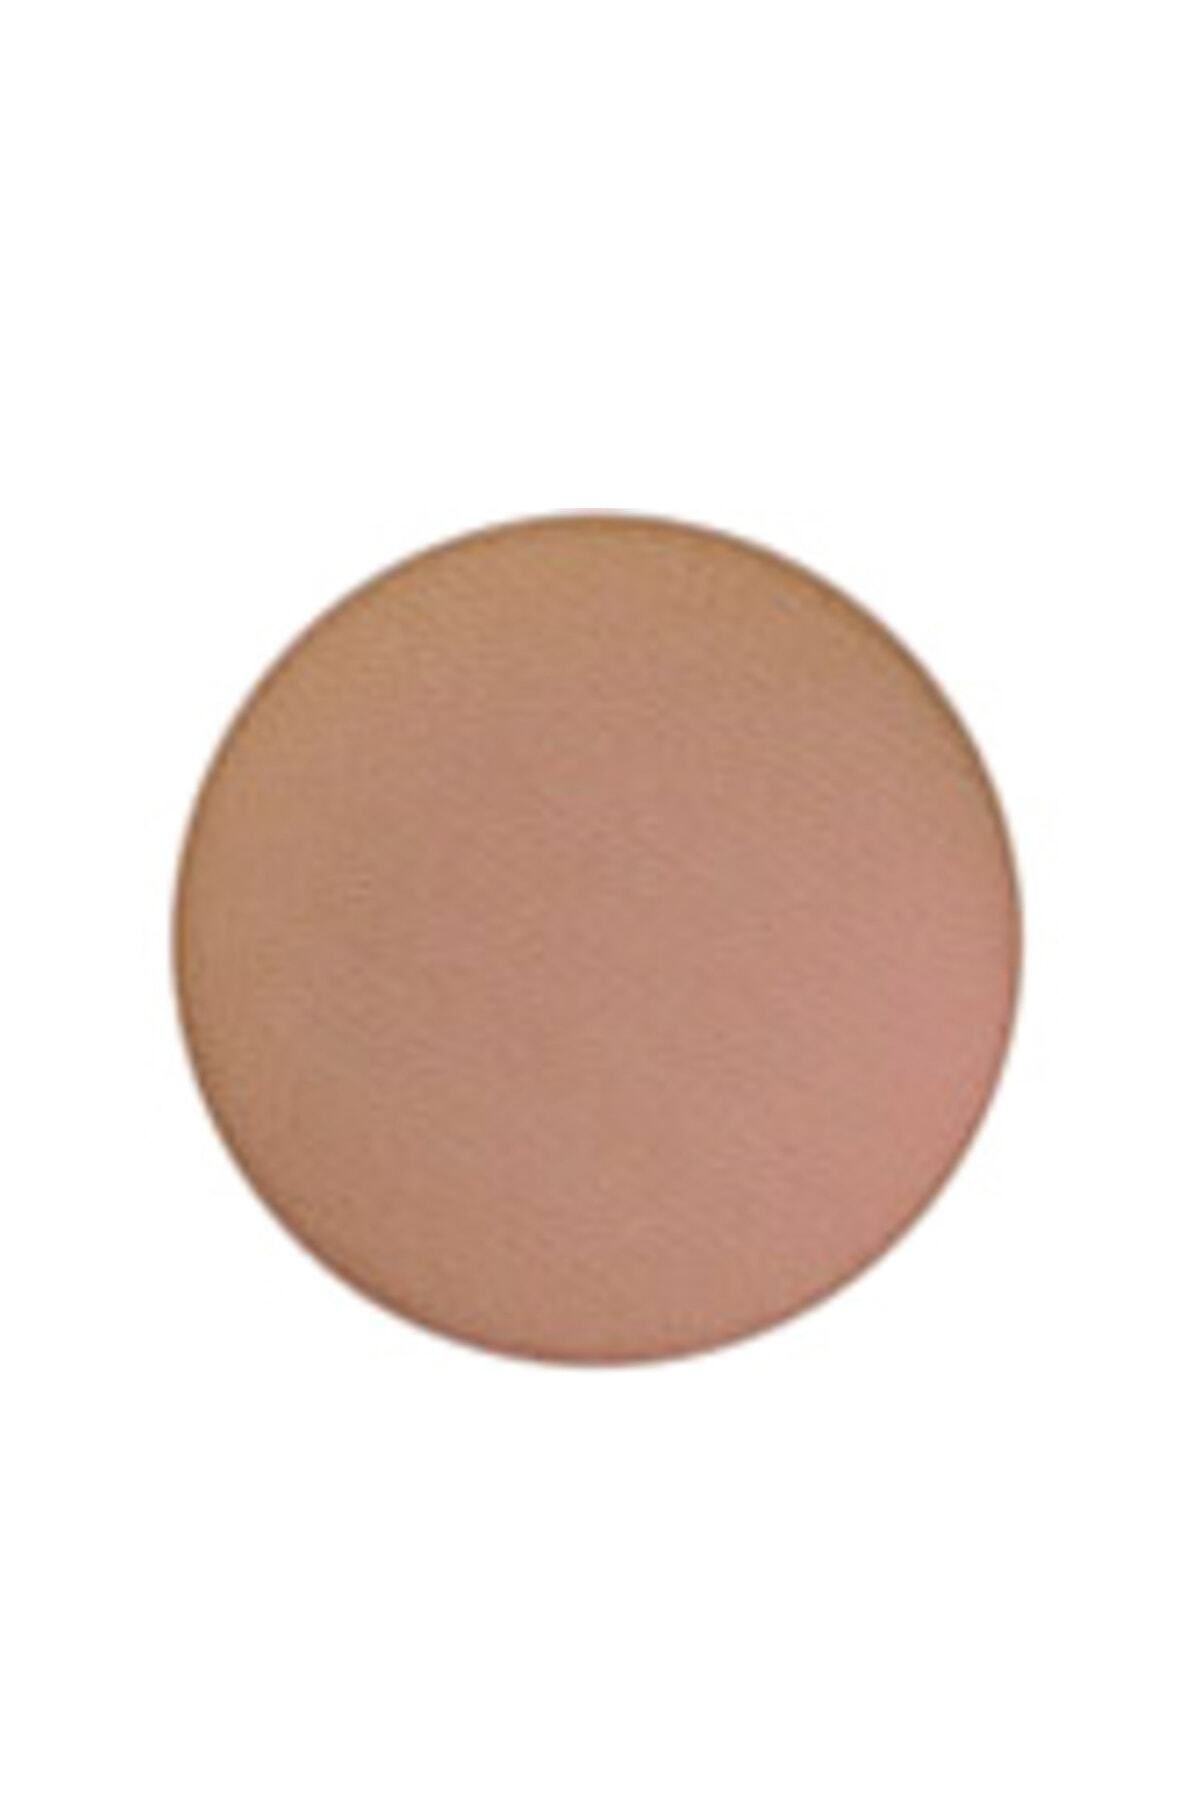 Mac Refill Far Cork Eye Shadow - 1.5 g Skin158